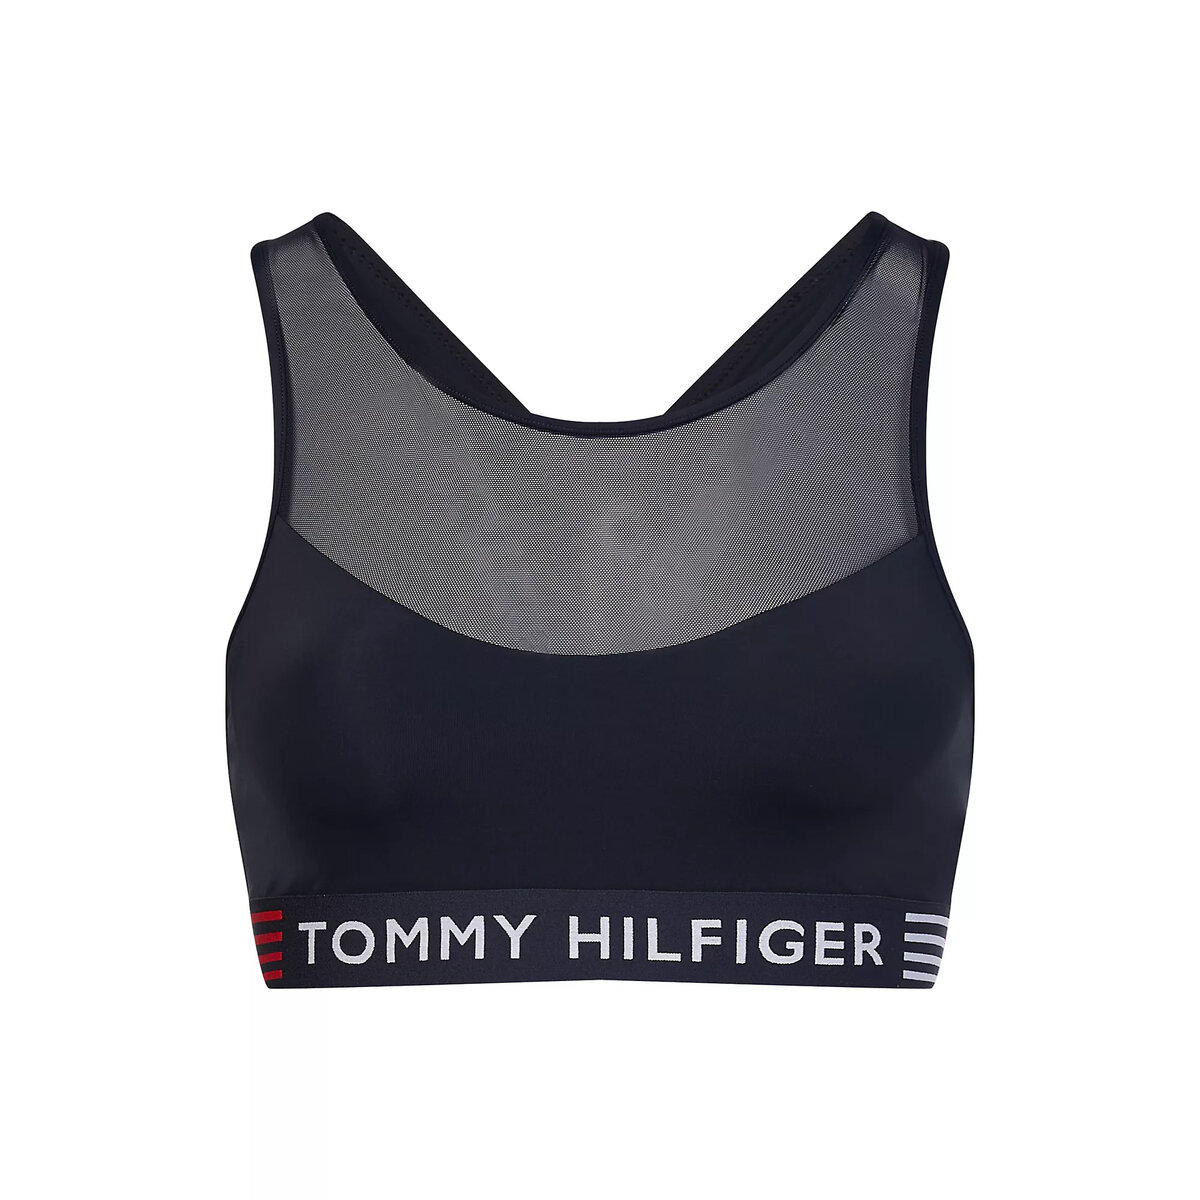 Bezkosticová dámská braletka - Tommy Hilfiger i652_UW0UW03510DW5001